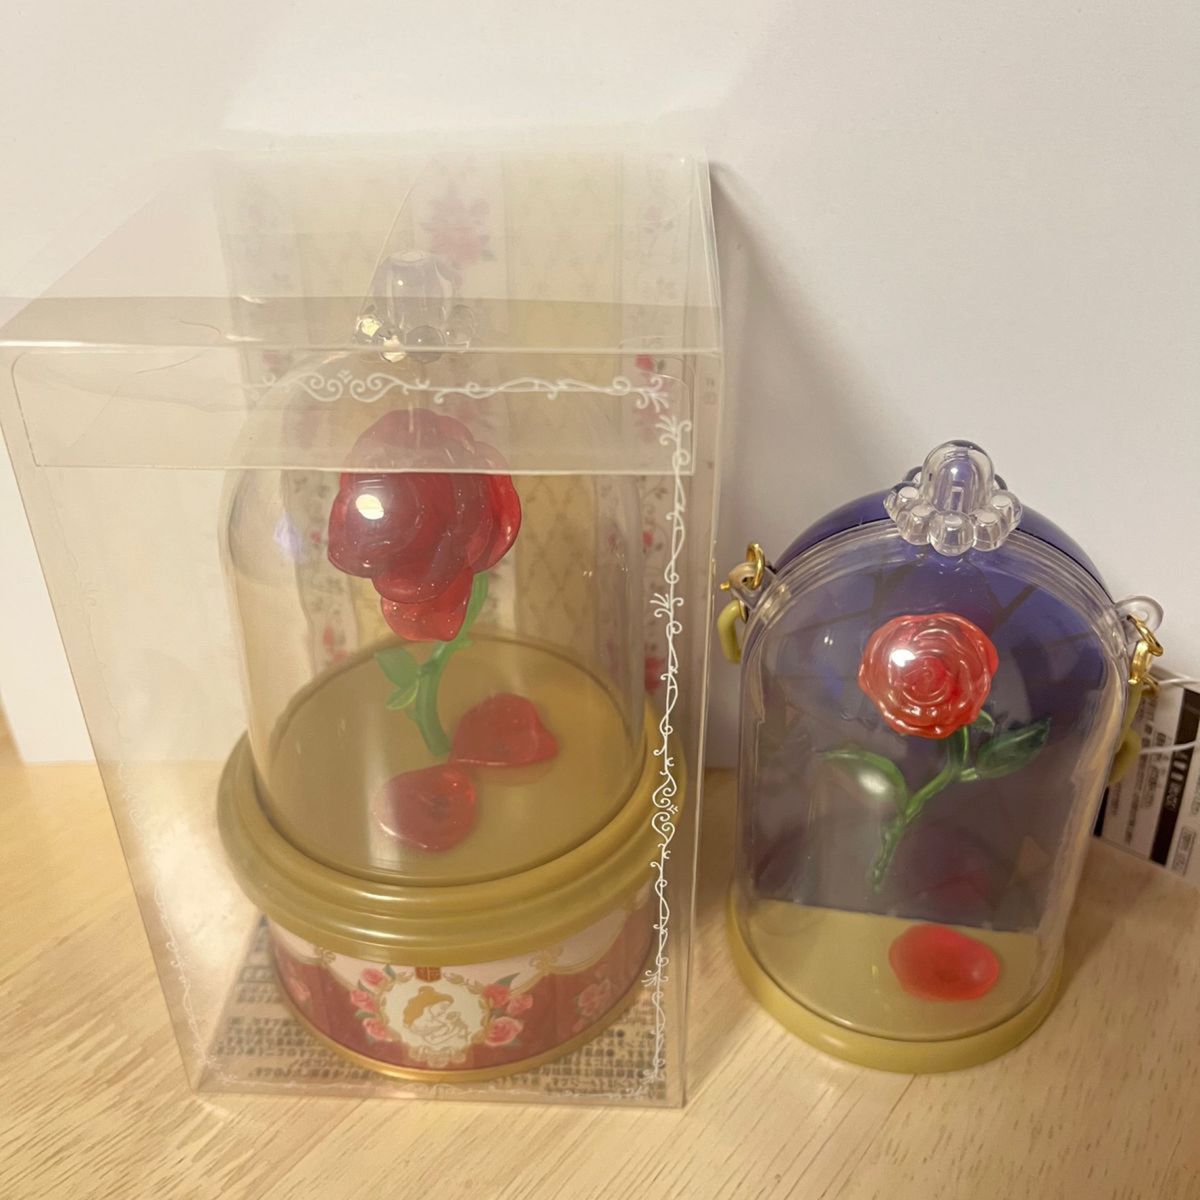 美女と野獣  薔薇  スナックケース  紅茶缶  2個セット　東京ディズニーリゾート  ディズニーランド  TDL   インテリア